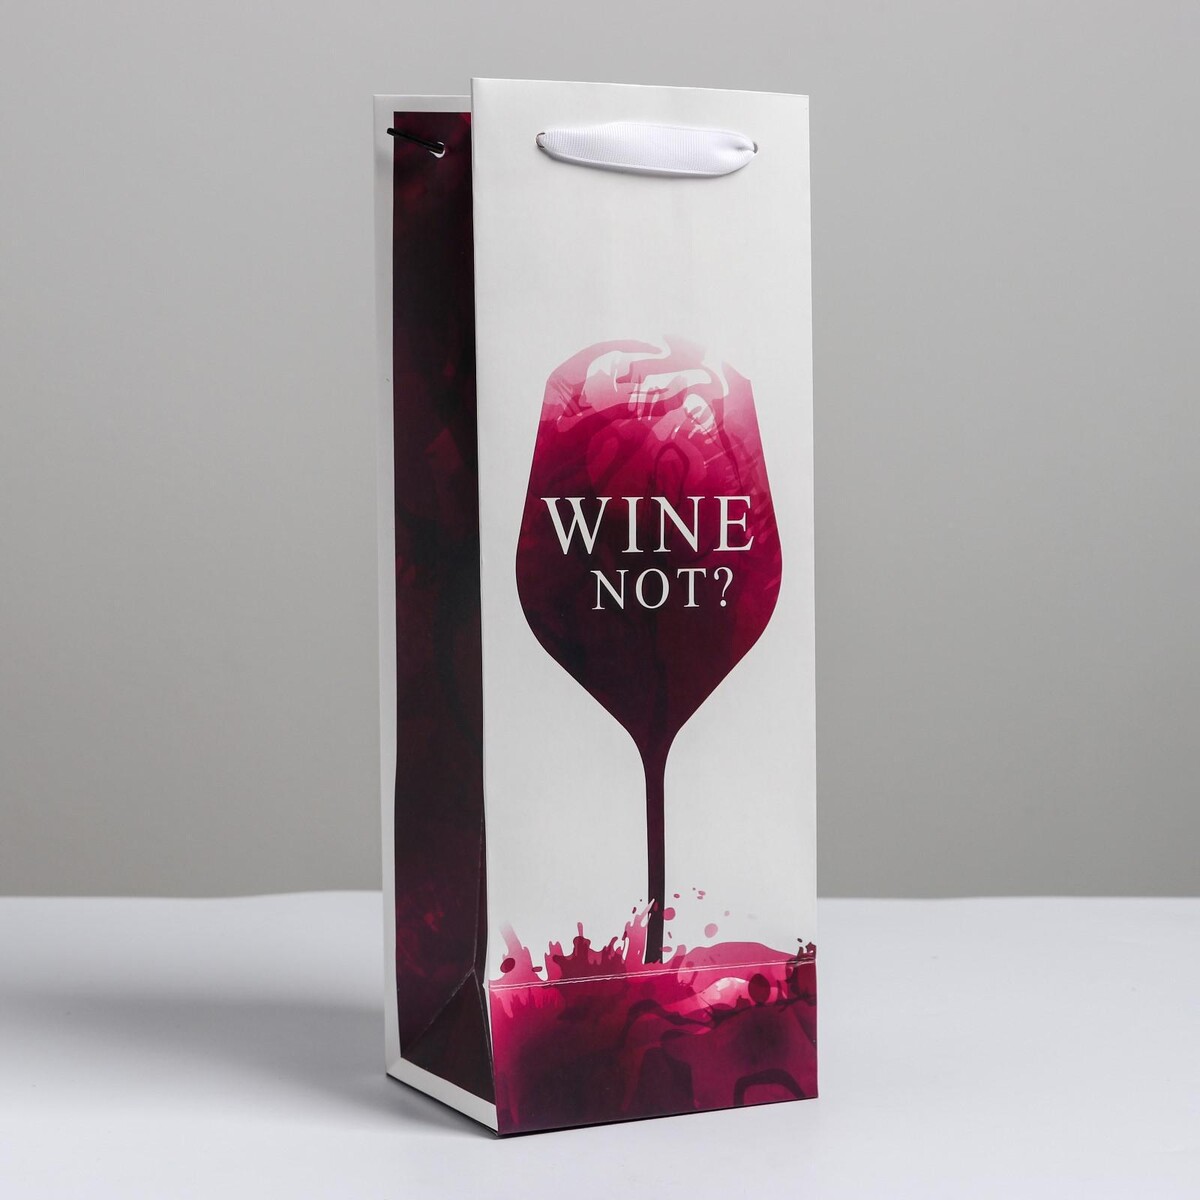 Пакет подарочный ламинированный под бутылку, упаковка, wine not, 13 x 35 x 10 см пакет ламинированный под бутылку wine not 13 x 35 x 10 см